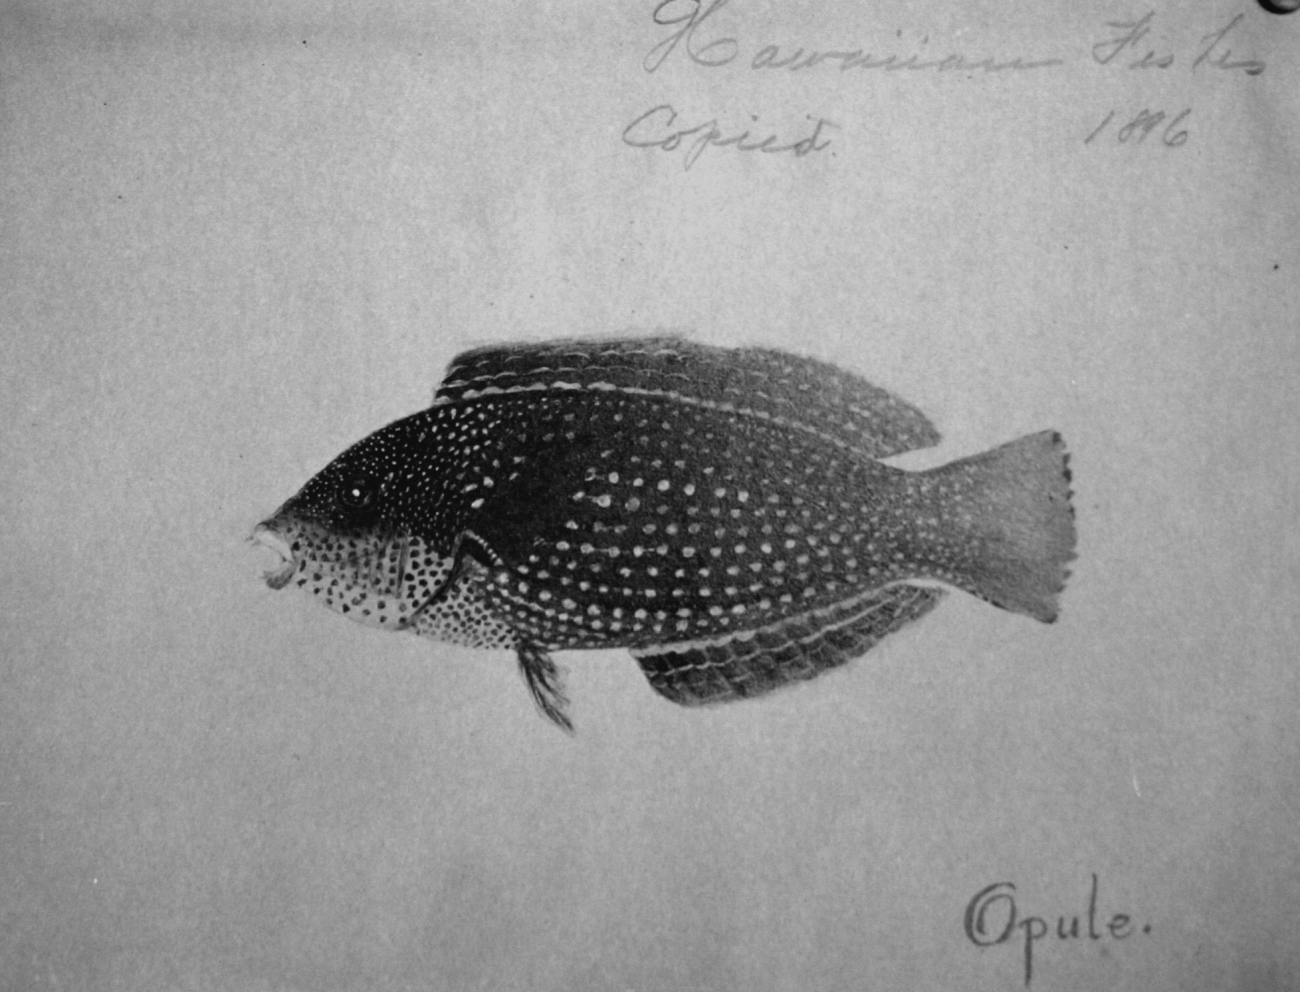 Hawaiian fishes, 1896, Opule